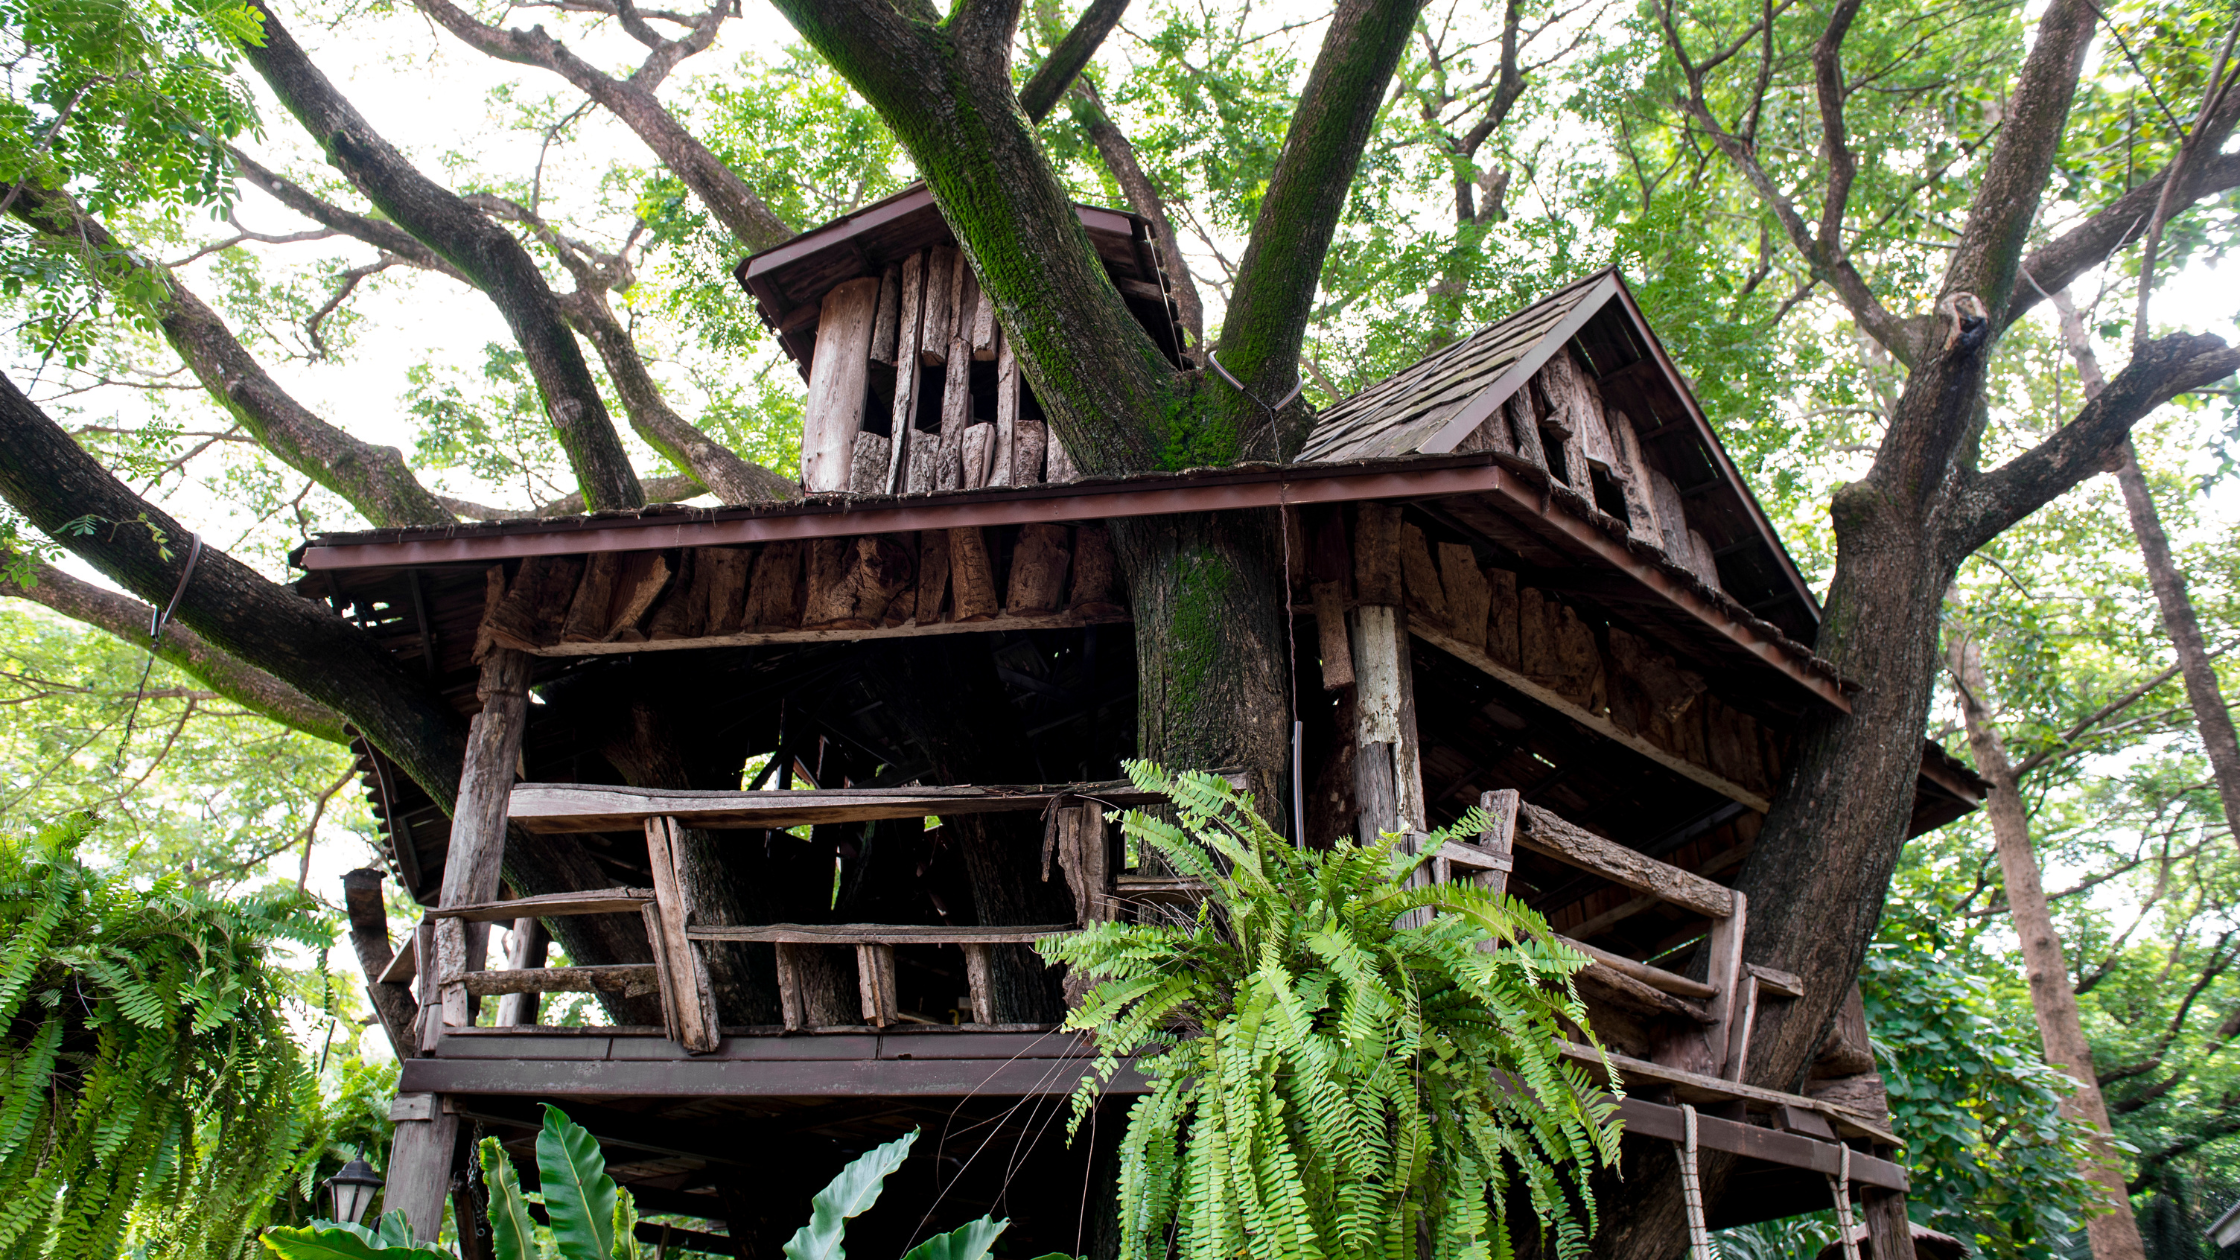 Casa de árbol disponible para viajeros de todo el mundo gracias a la integración de Airbnb y RoomRaccoon